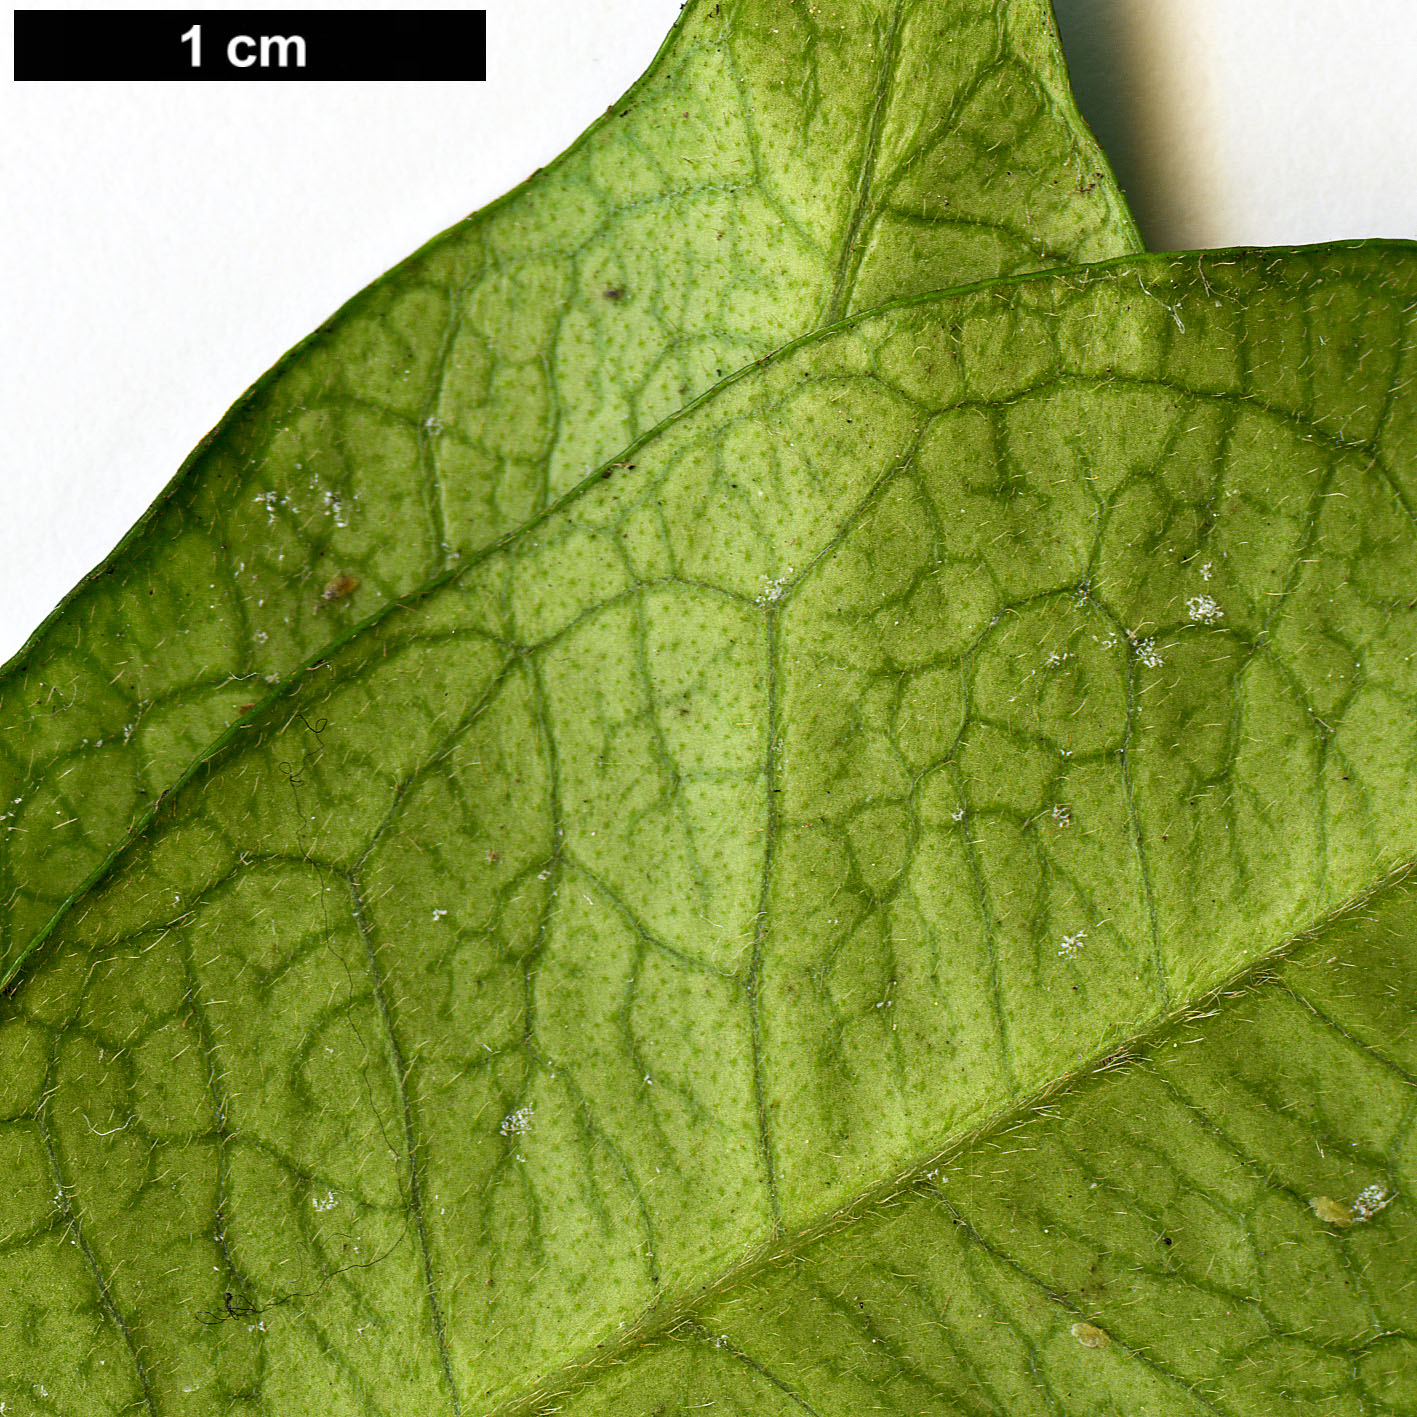 High resolution image: Family: Apocynaceae - Genus: Trachelospermum - Taxon: jasminoides